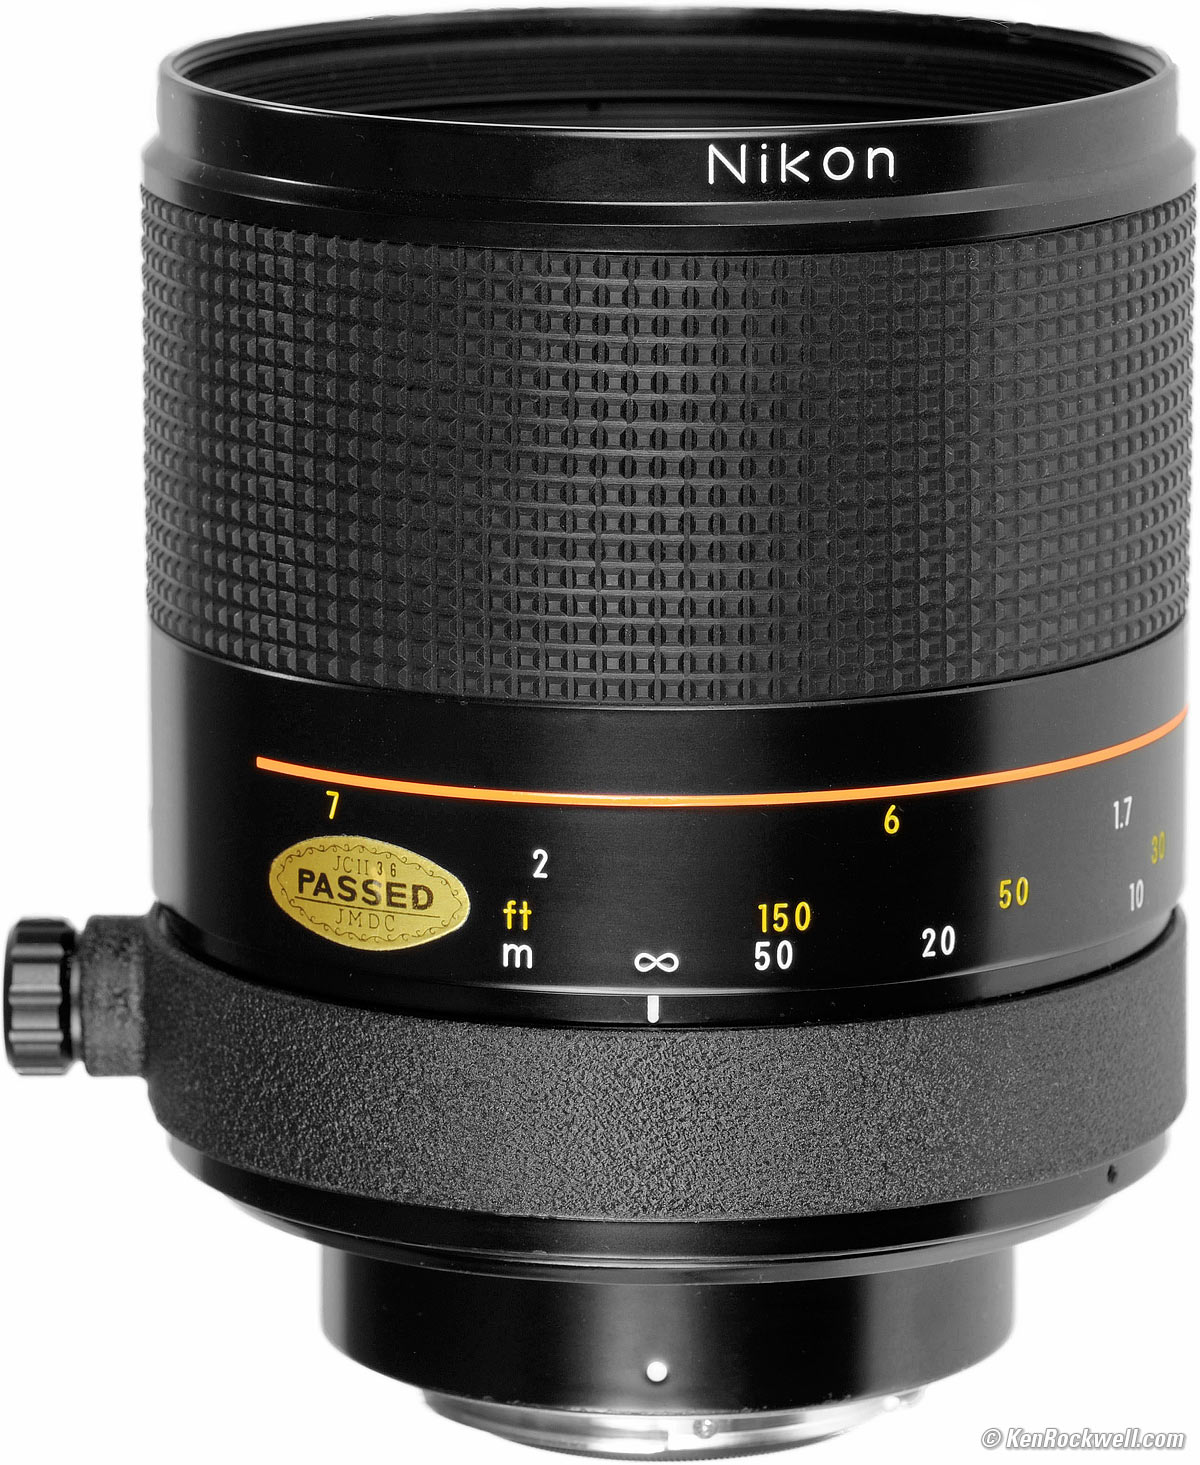 ニコン NIKON REFLEX NIKKOR 500mm F8 NEW #1897809A-